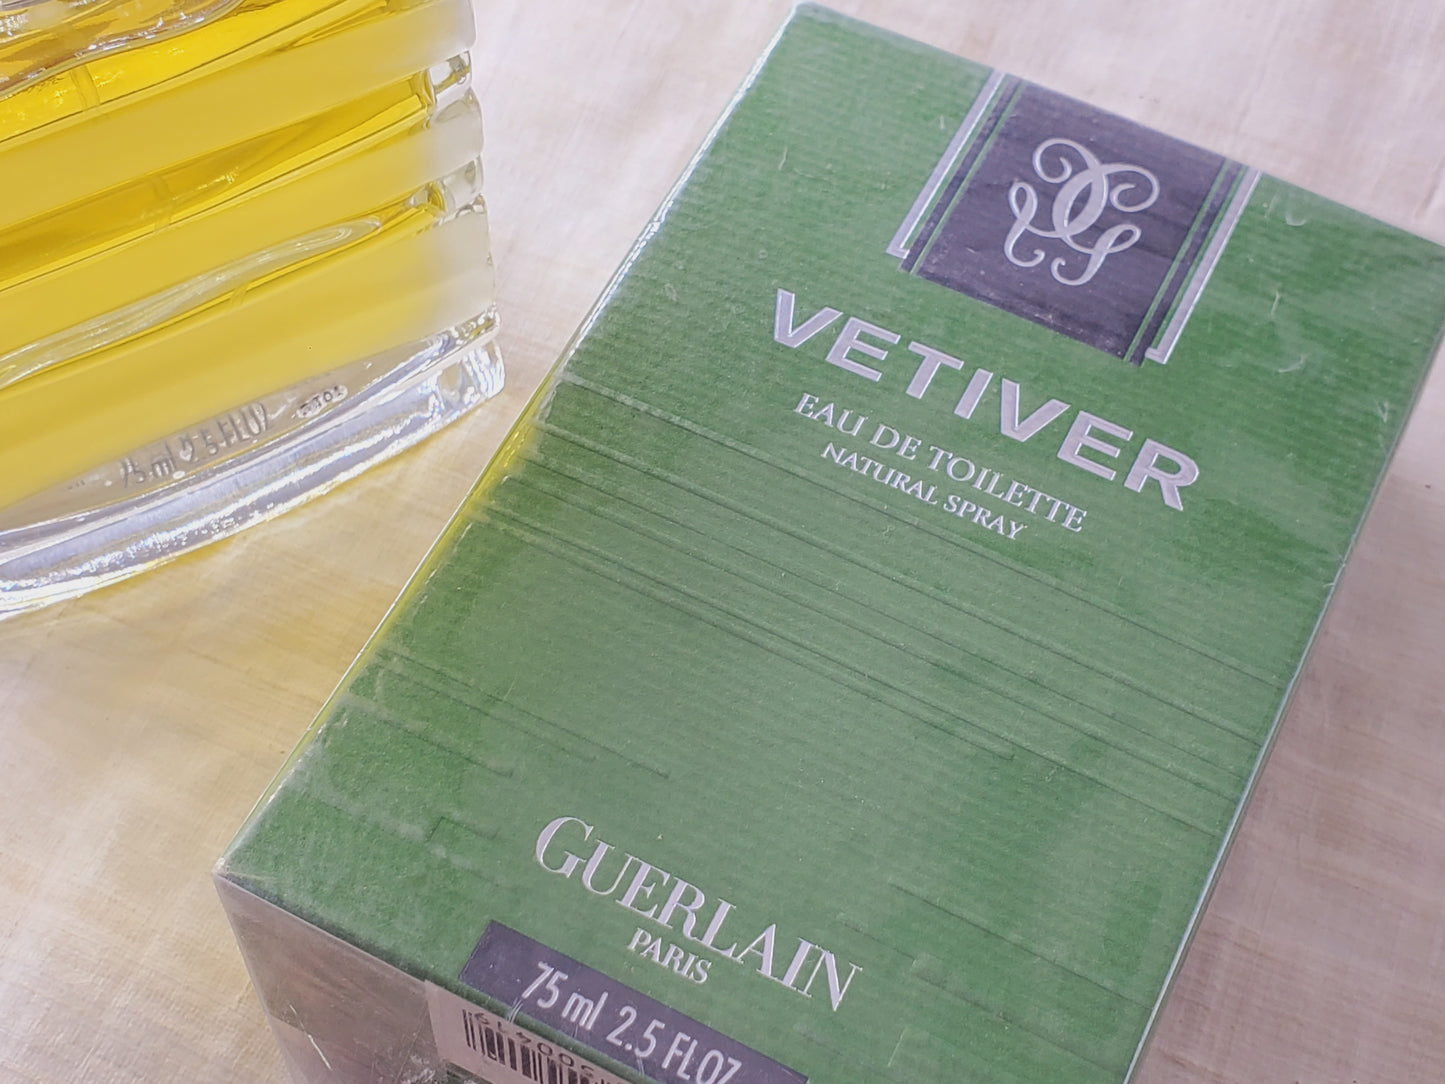 Guerlain Vetiver for men EDT Spray 75 ml 2.5 oz, Vintage 2000's Version, Sealed